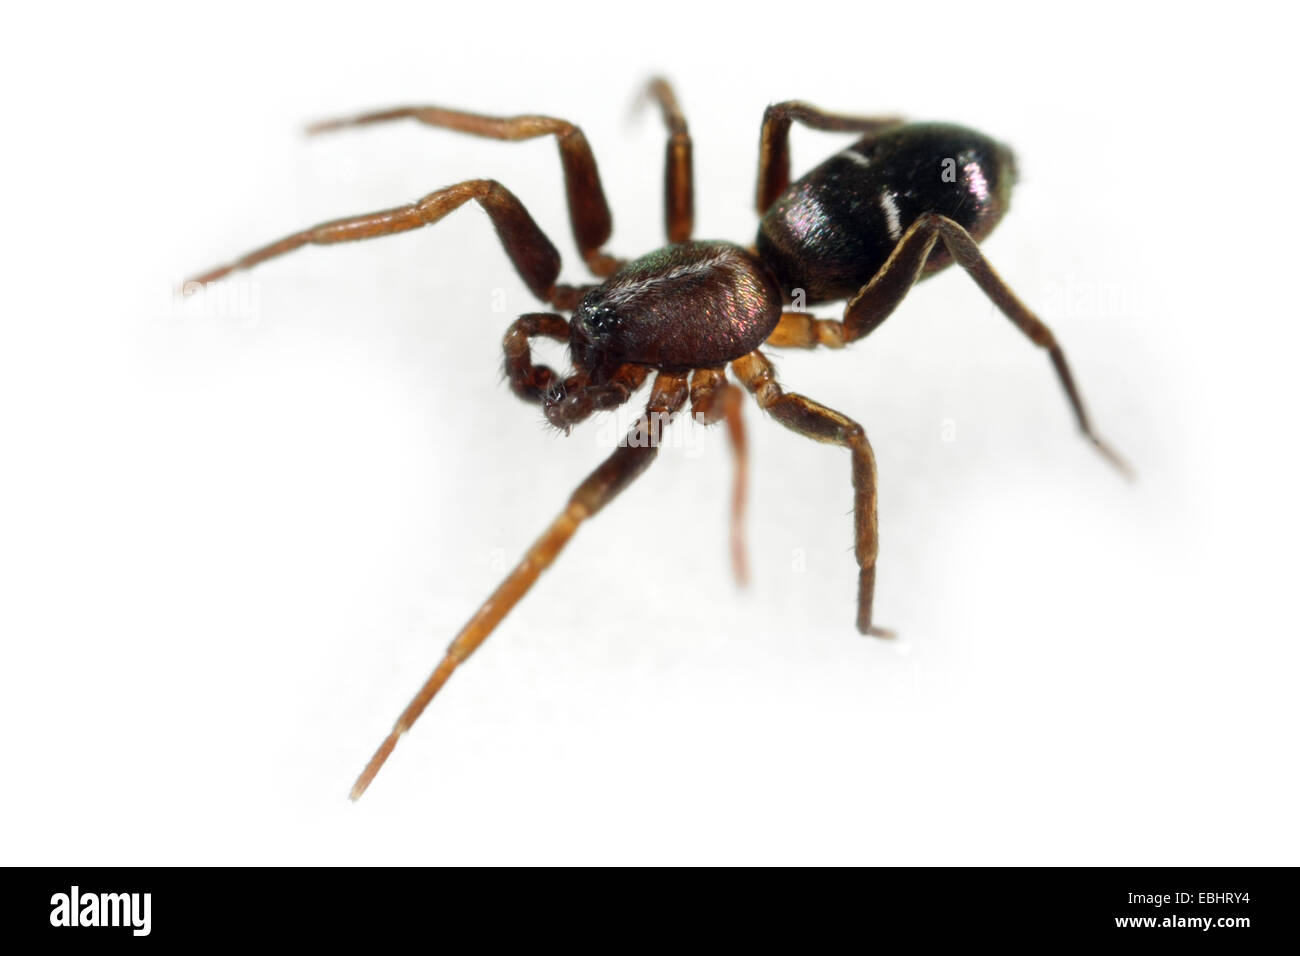 Un homme Ant-Spider subopaca Pine-Tree (Micaria) sur un fond blanc, une partie de la famille Gnaphosidae - Sol furtif des araignées. Banque D'Images